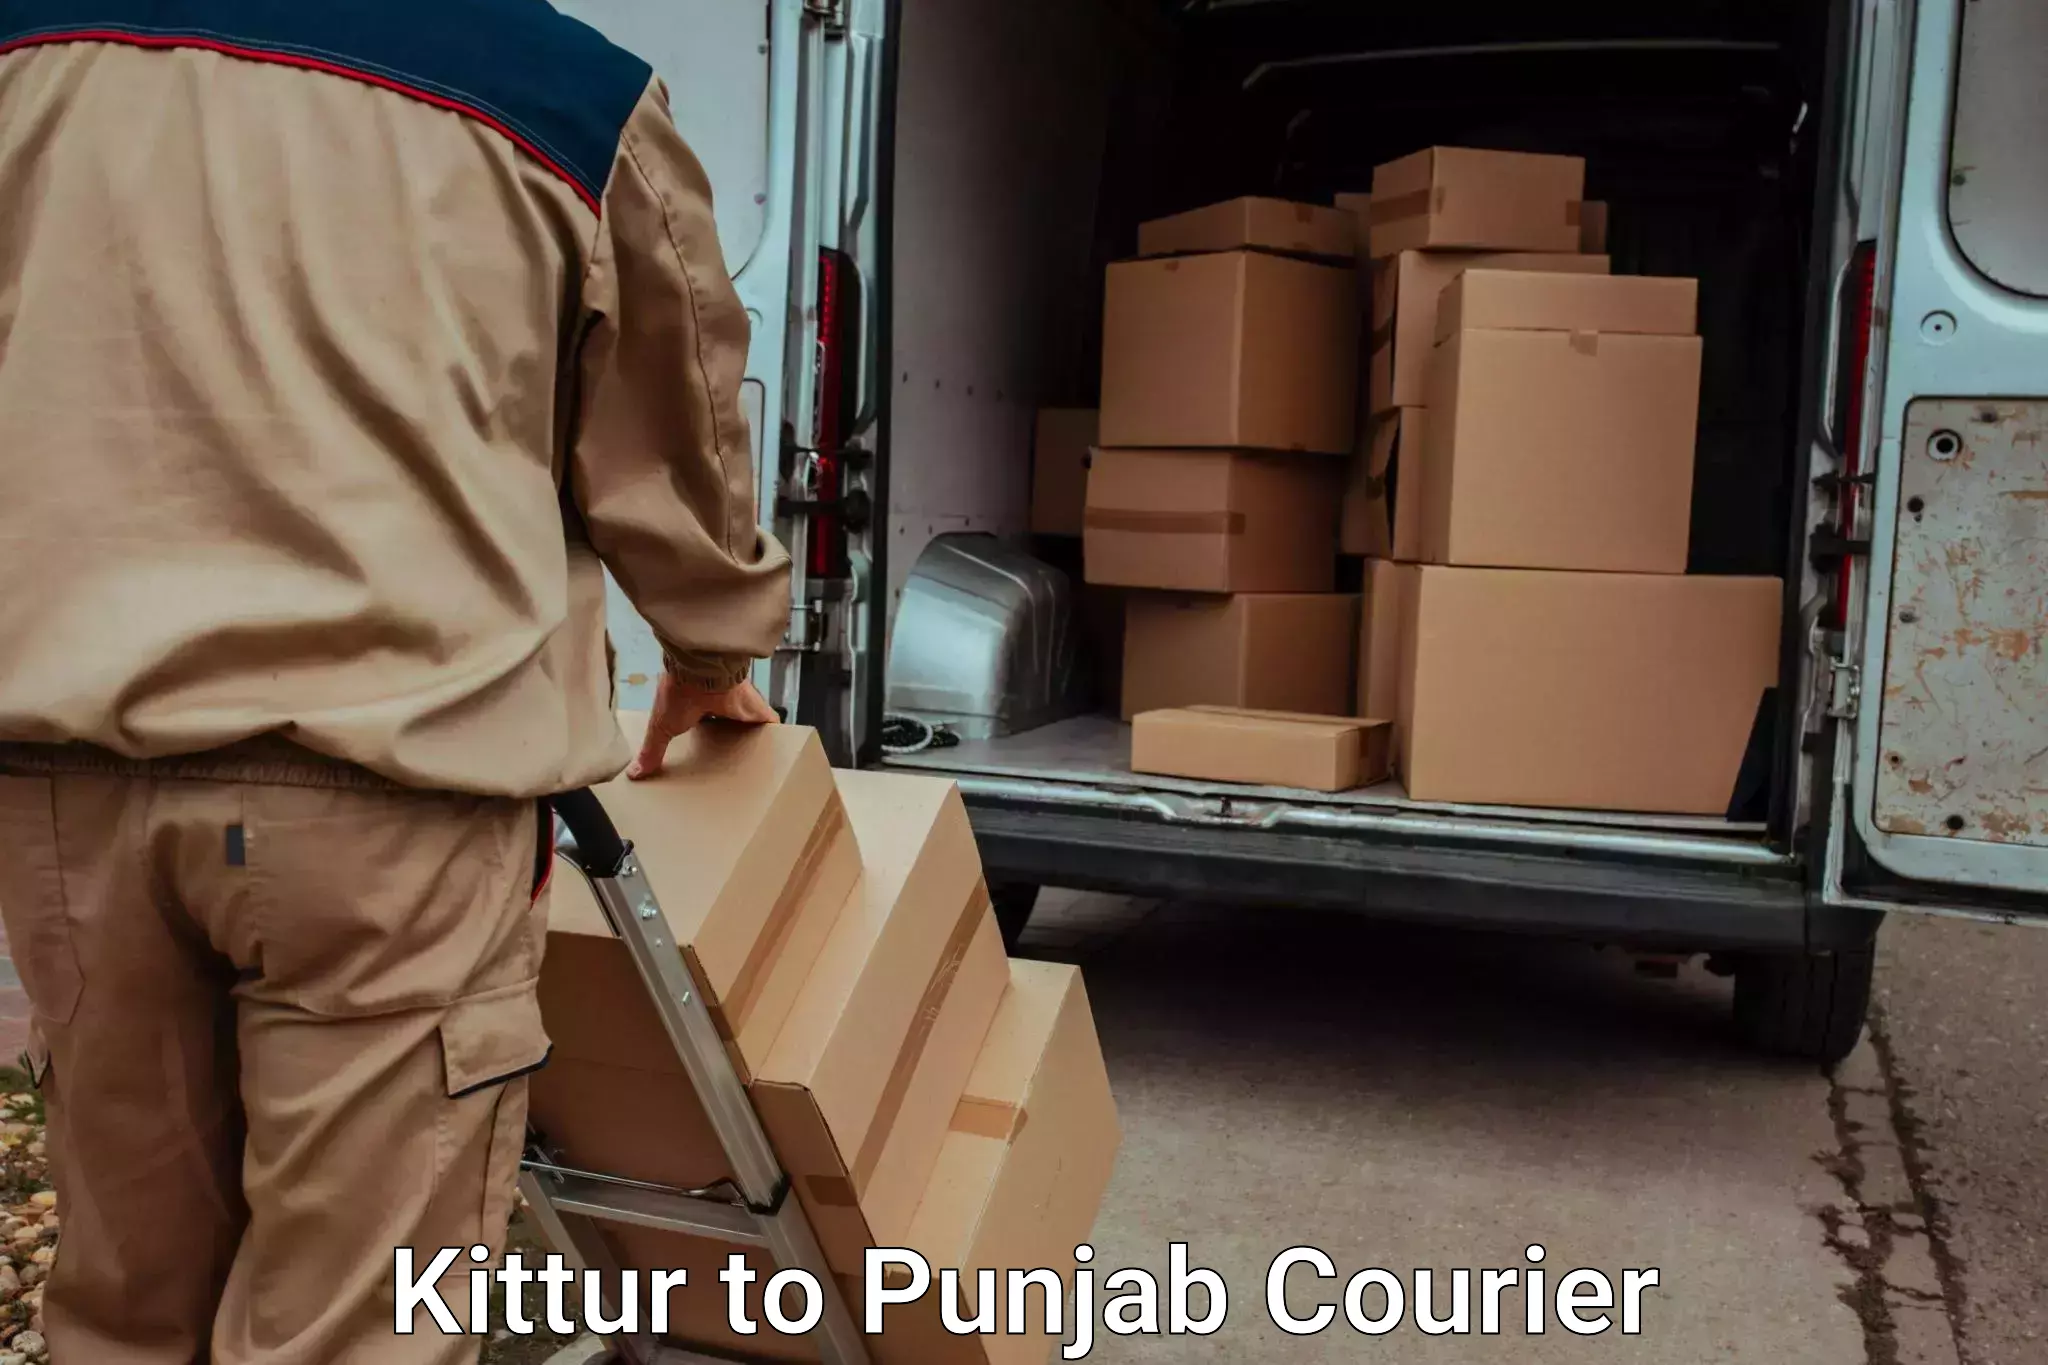 Household goods transport service Kittur to Amritsar